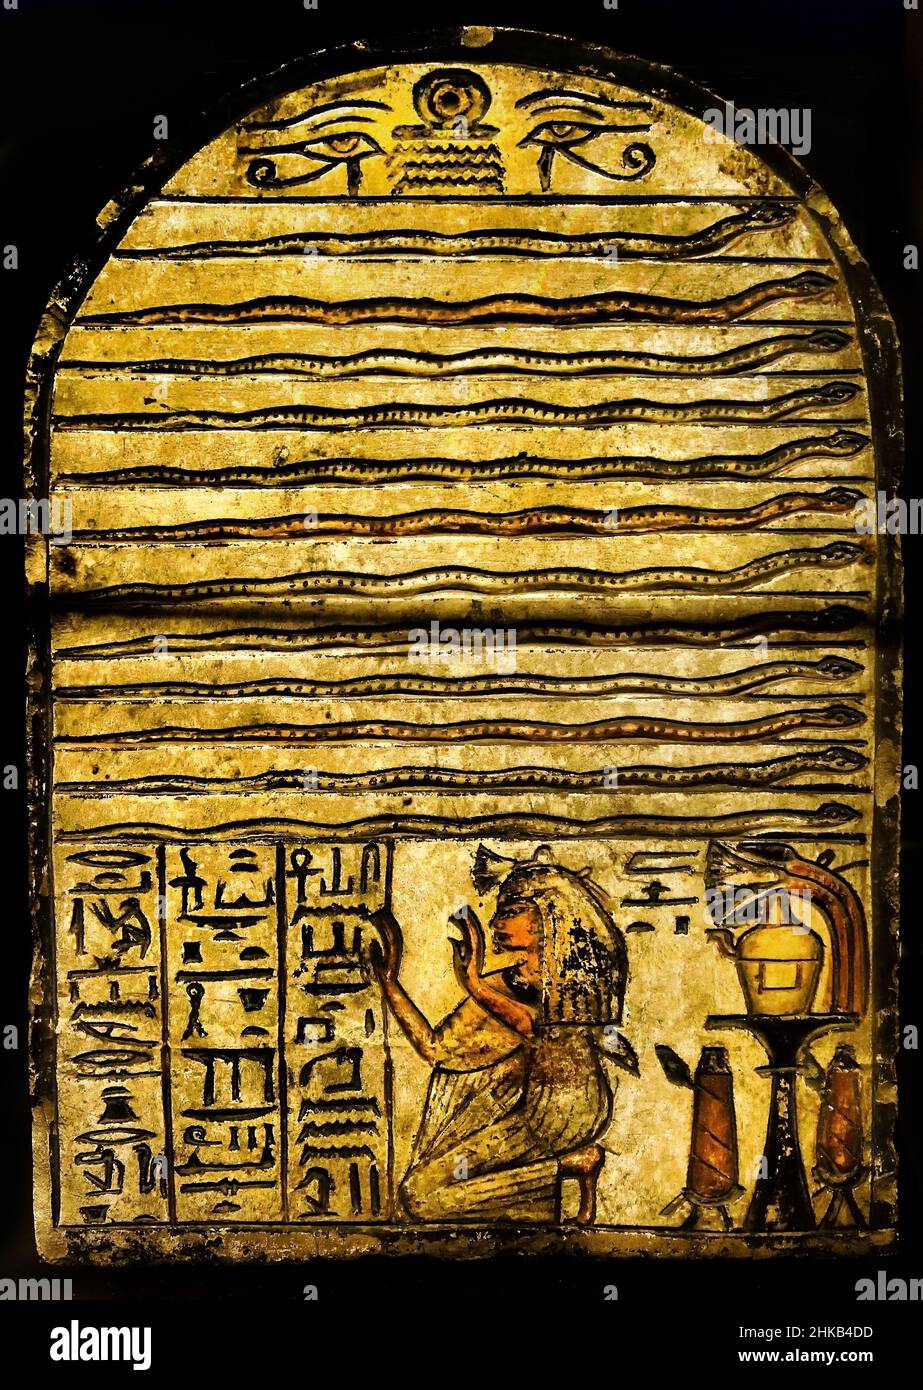 Stela dédiée par Nebnefer à Meretseger, peinture pierre / calcaire, 27 x 17,5 x 4 cm, 1292–1190 av. J.-C., 19th,19e dynastie, Nouveau Royaume, Deir el-Medina Egypte (Museo Egizio di Torino Italie) Banque D'Images